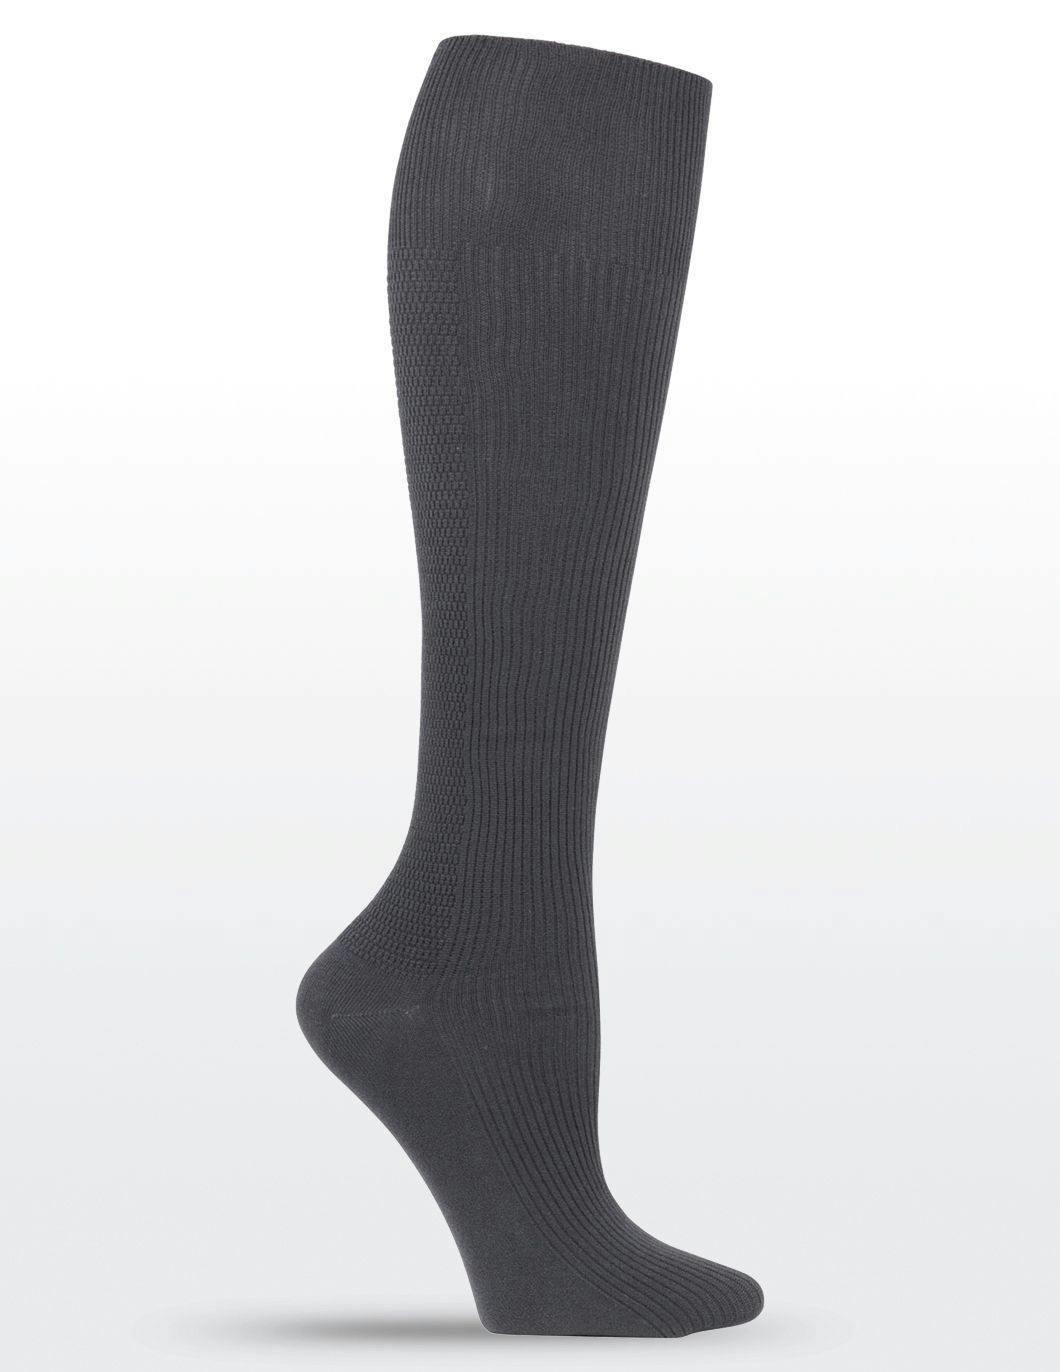 mens-compression-socks-pewter